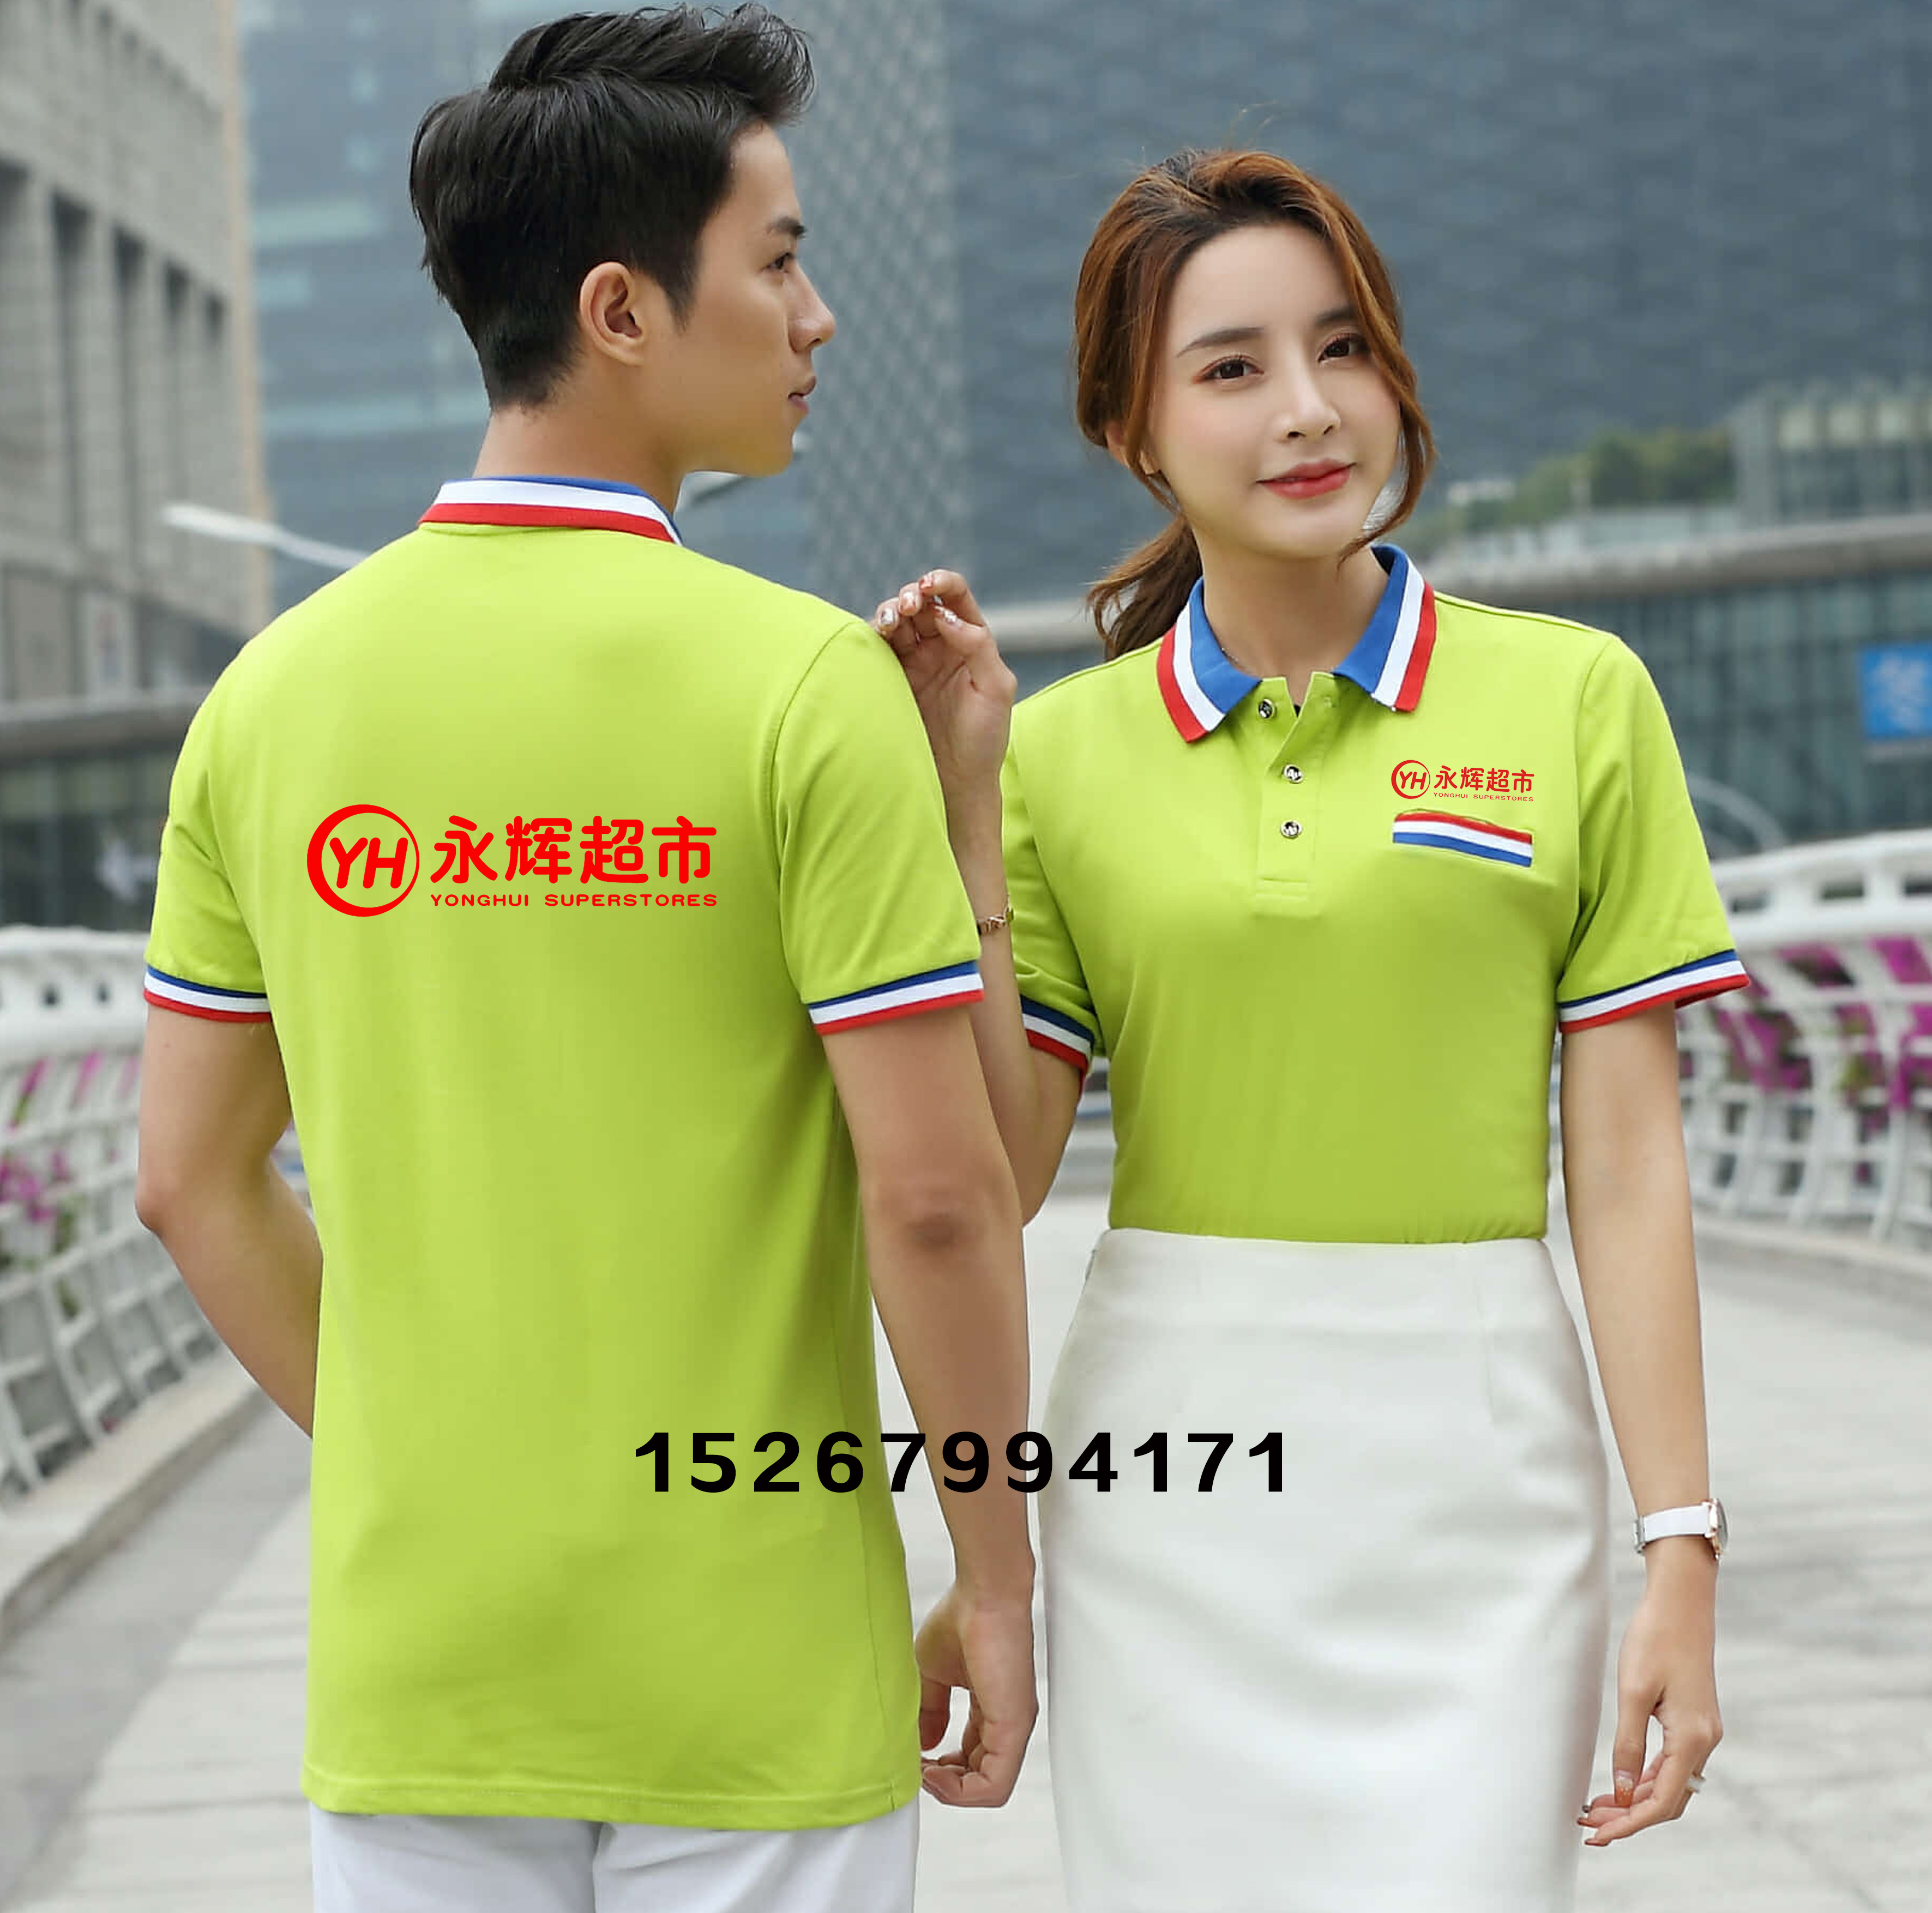 夏永辉超市男女工作衣服装餐饮短袖T恤Polo广告文化衫定制印绣字